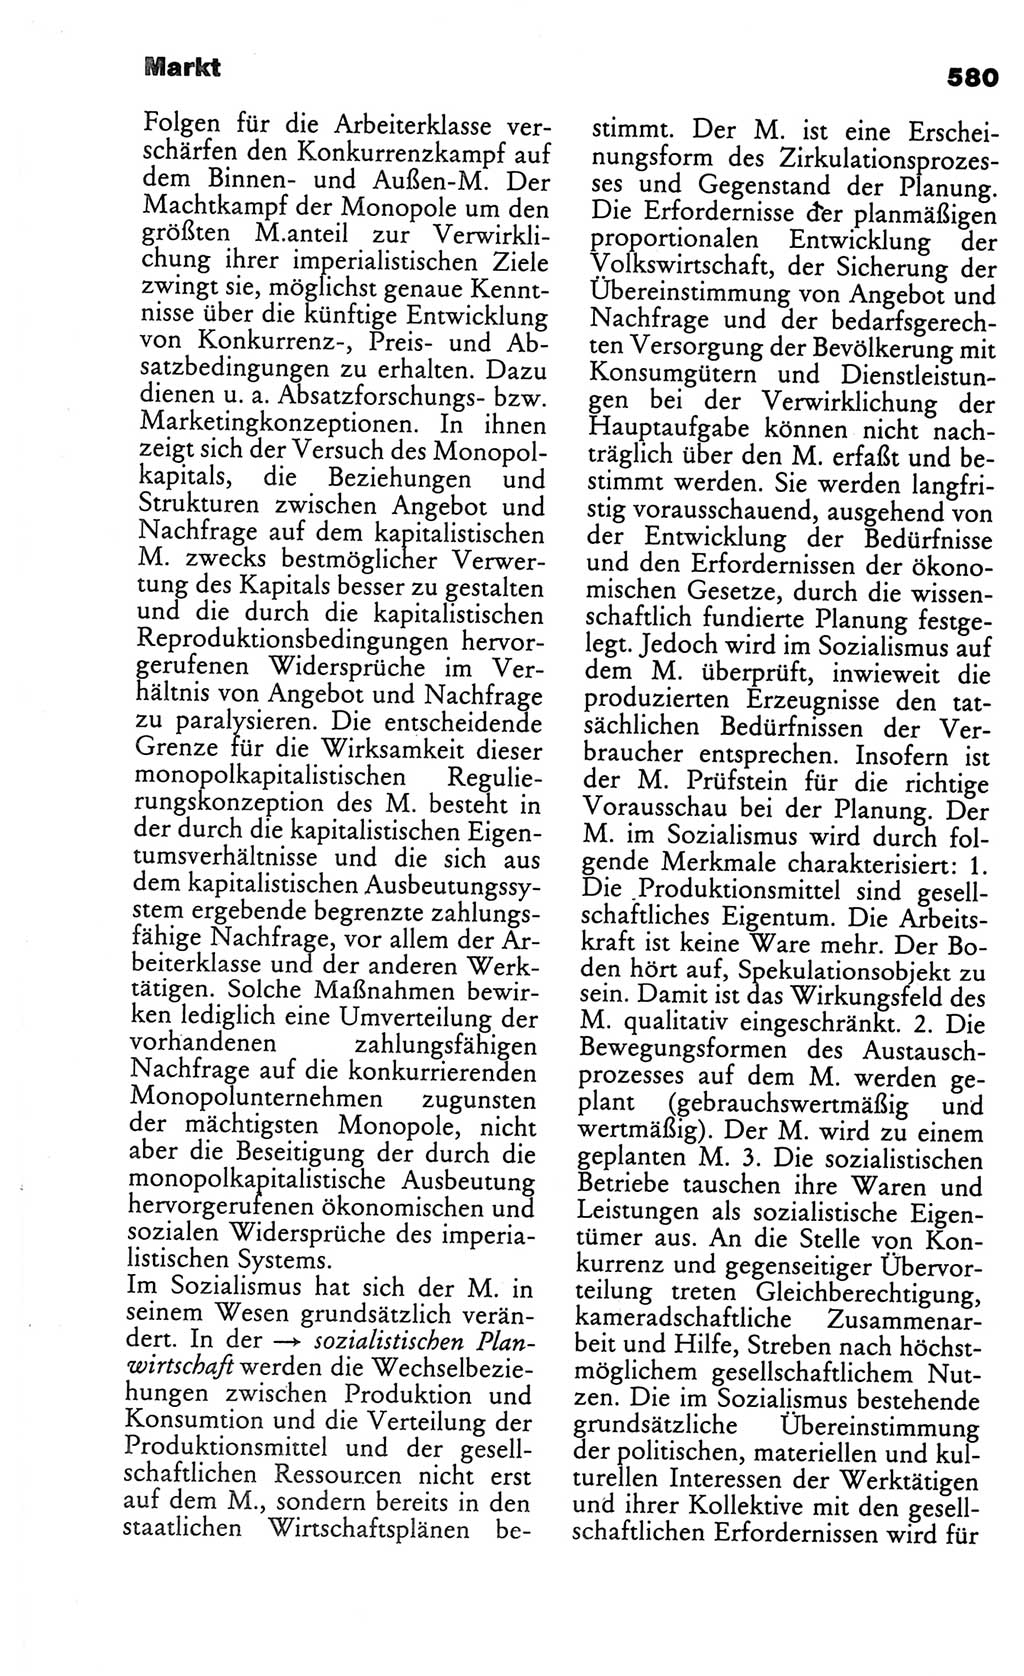 Kleines politisches Wörterbuch [Deutsche Demokratische Republik (DDR)] 1986, Seite 580 (Kl. pol. Wb. DDR 1986, S. 580)